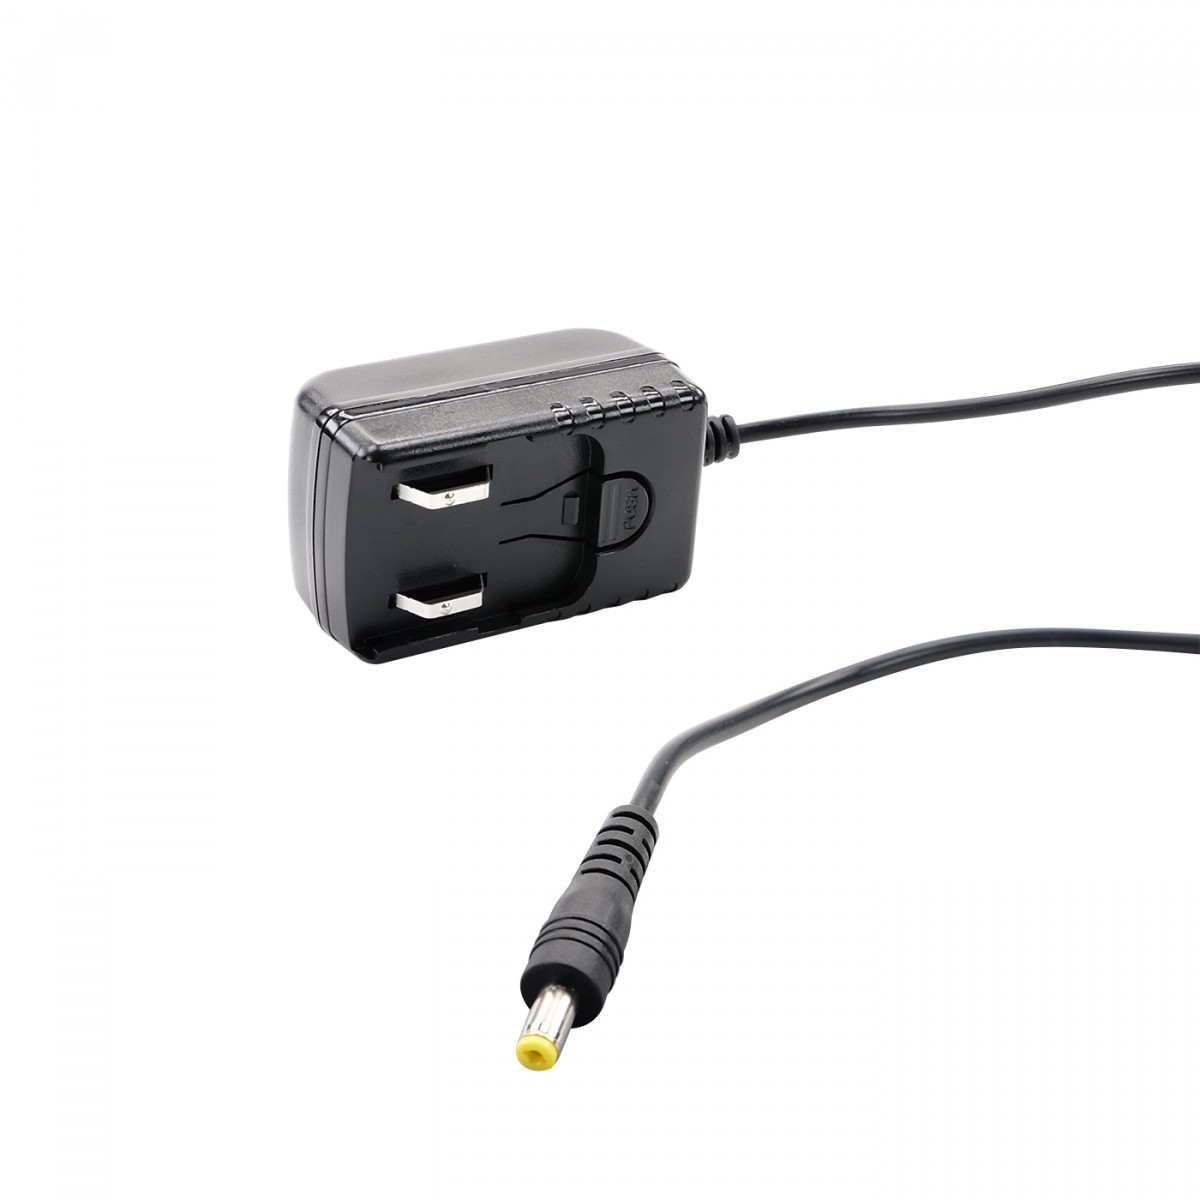 SEPURA Netzteil ohne Steckeradapter zur Nutzung als 1fach Ladegerät, für Ladeschale des STP8X ATEX 300-01999